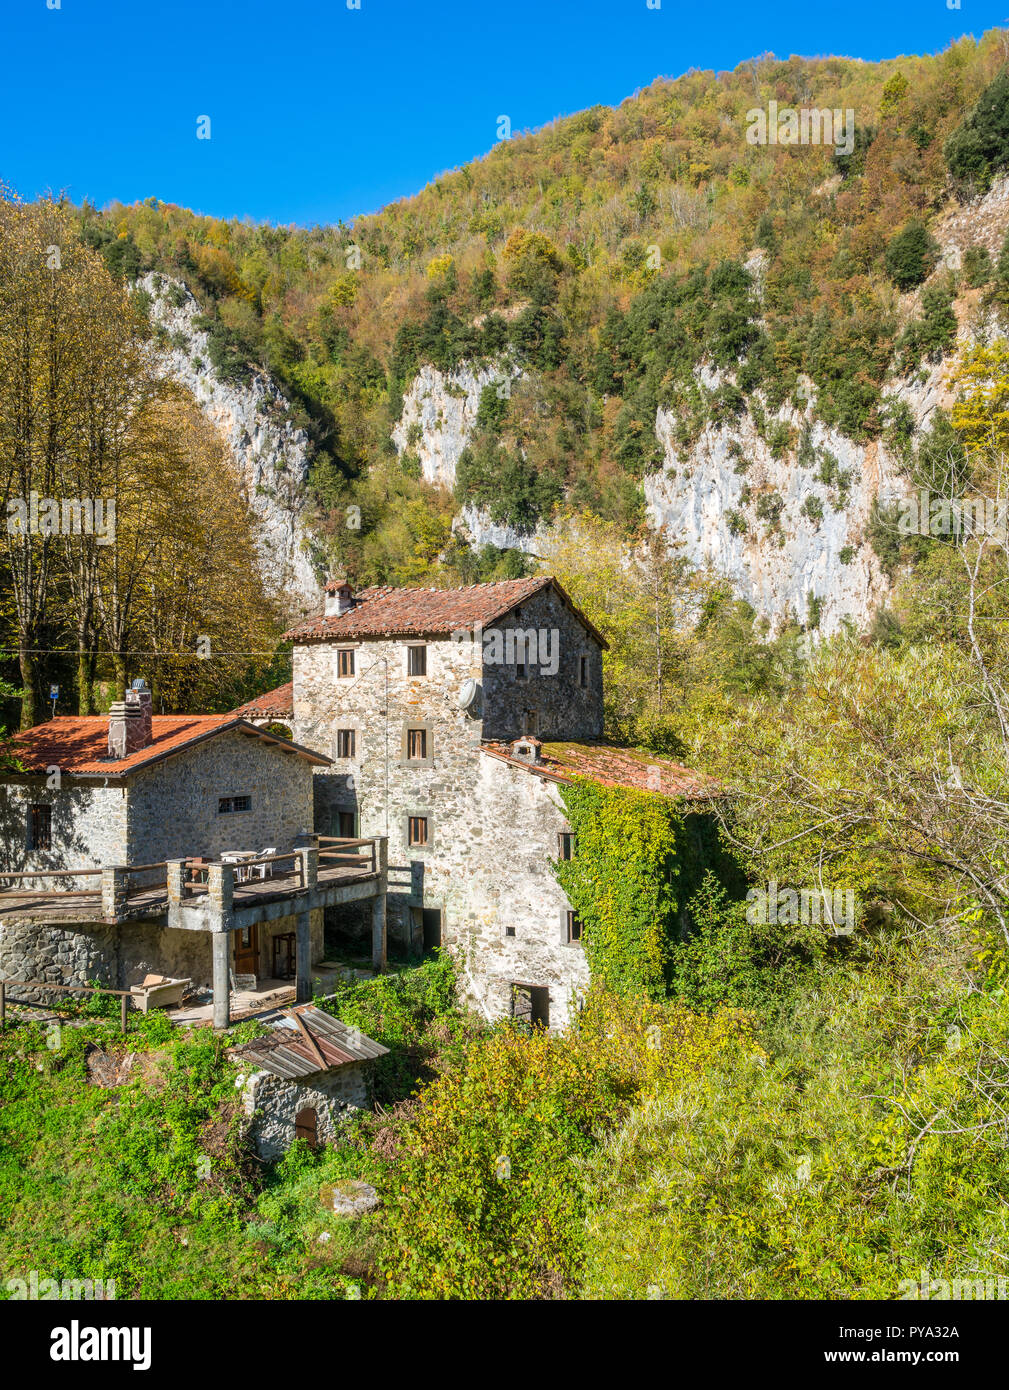 Ein idyllisches Landhaus in der Garfagnana, in der Nähe von Castelnuovo. Provinz Lucca, Toskana. Stockfoto